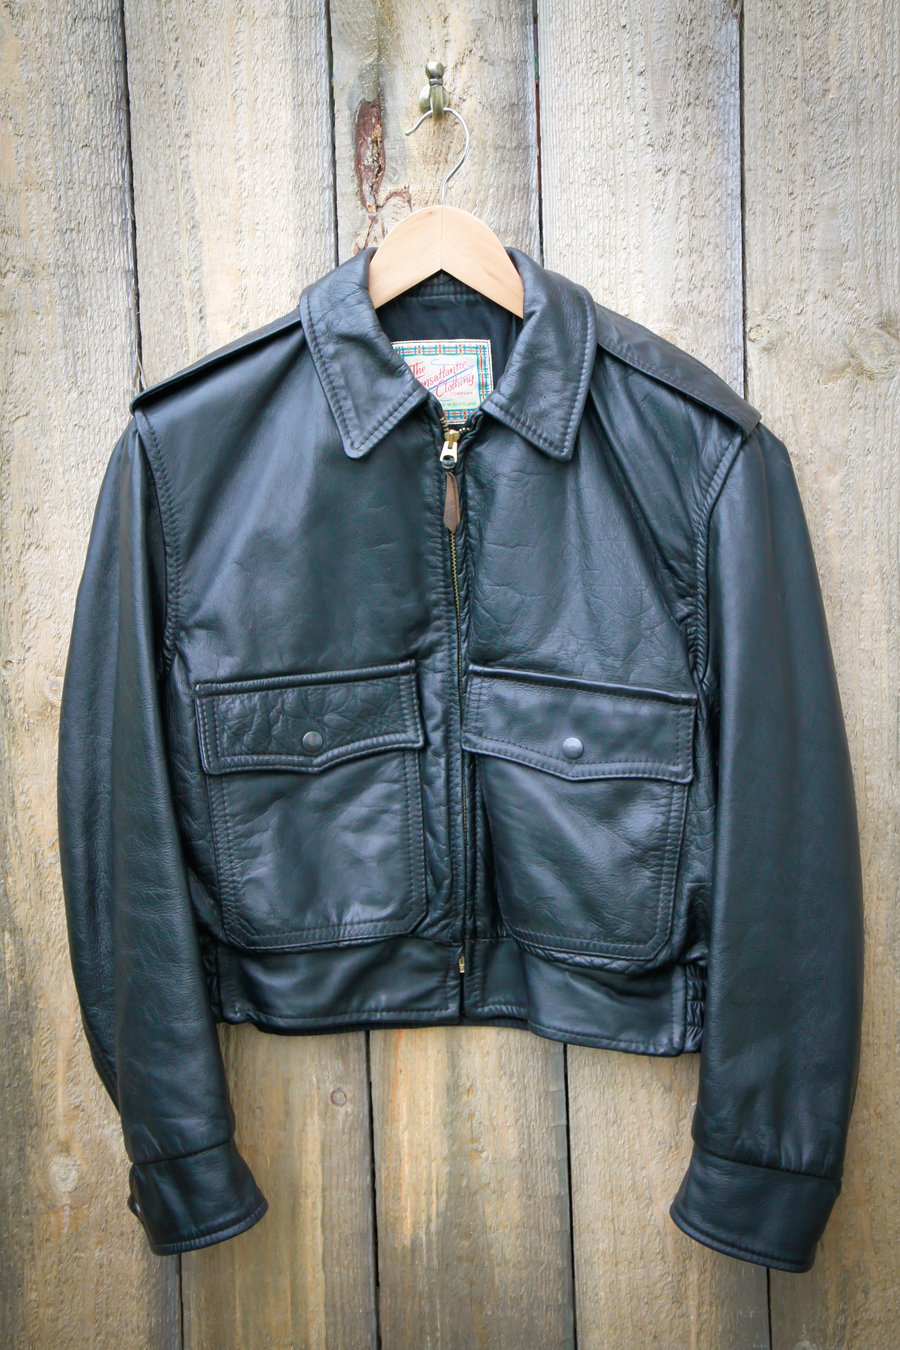 Image of Aero Leather Transatlantic Clothing Steerhide Jacket Size 40 Highwayman/Classic 